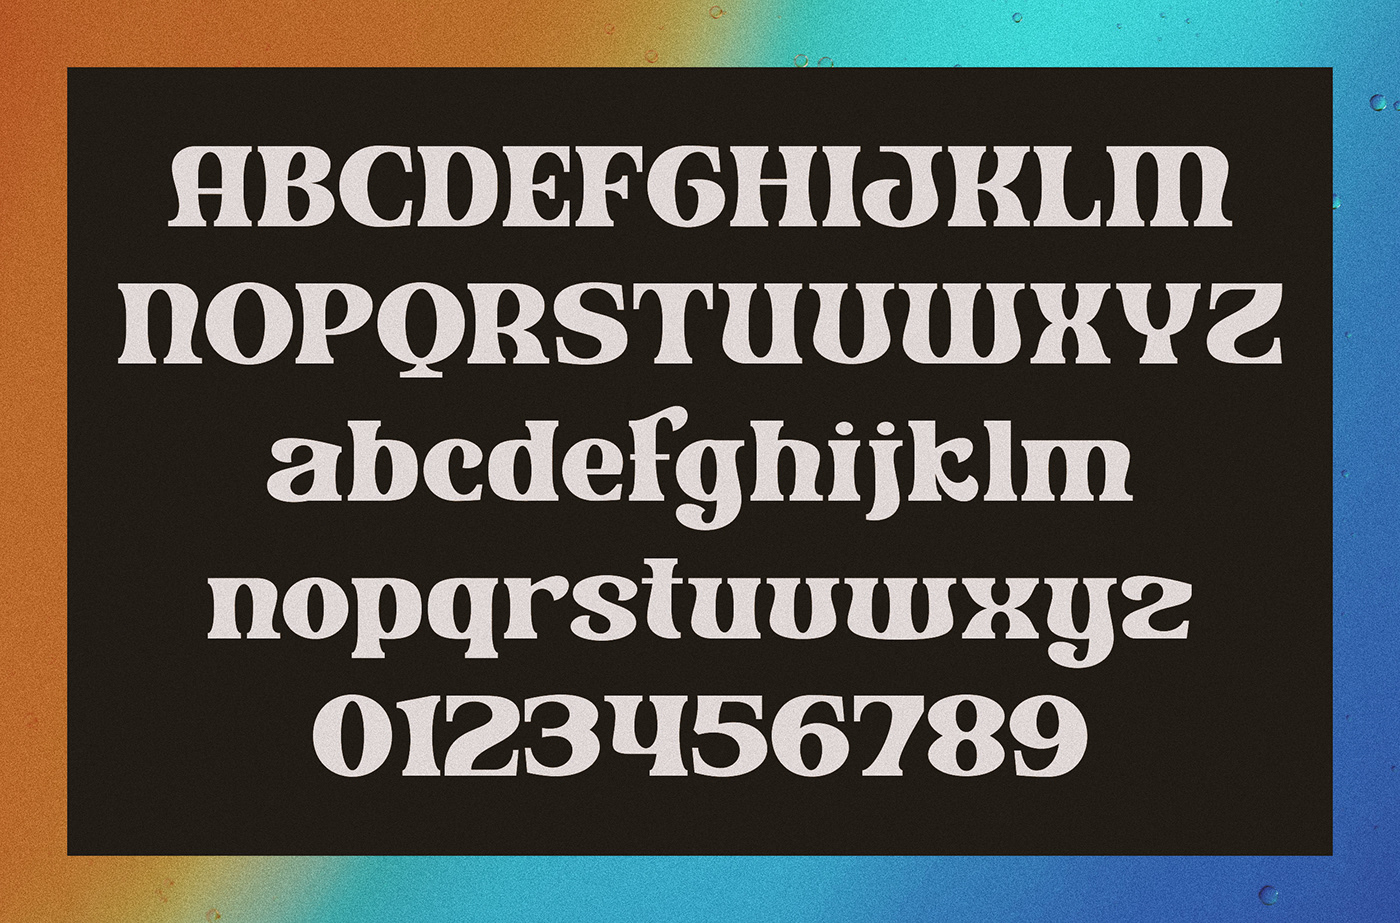 Kabal Free Font - serif